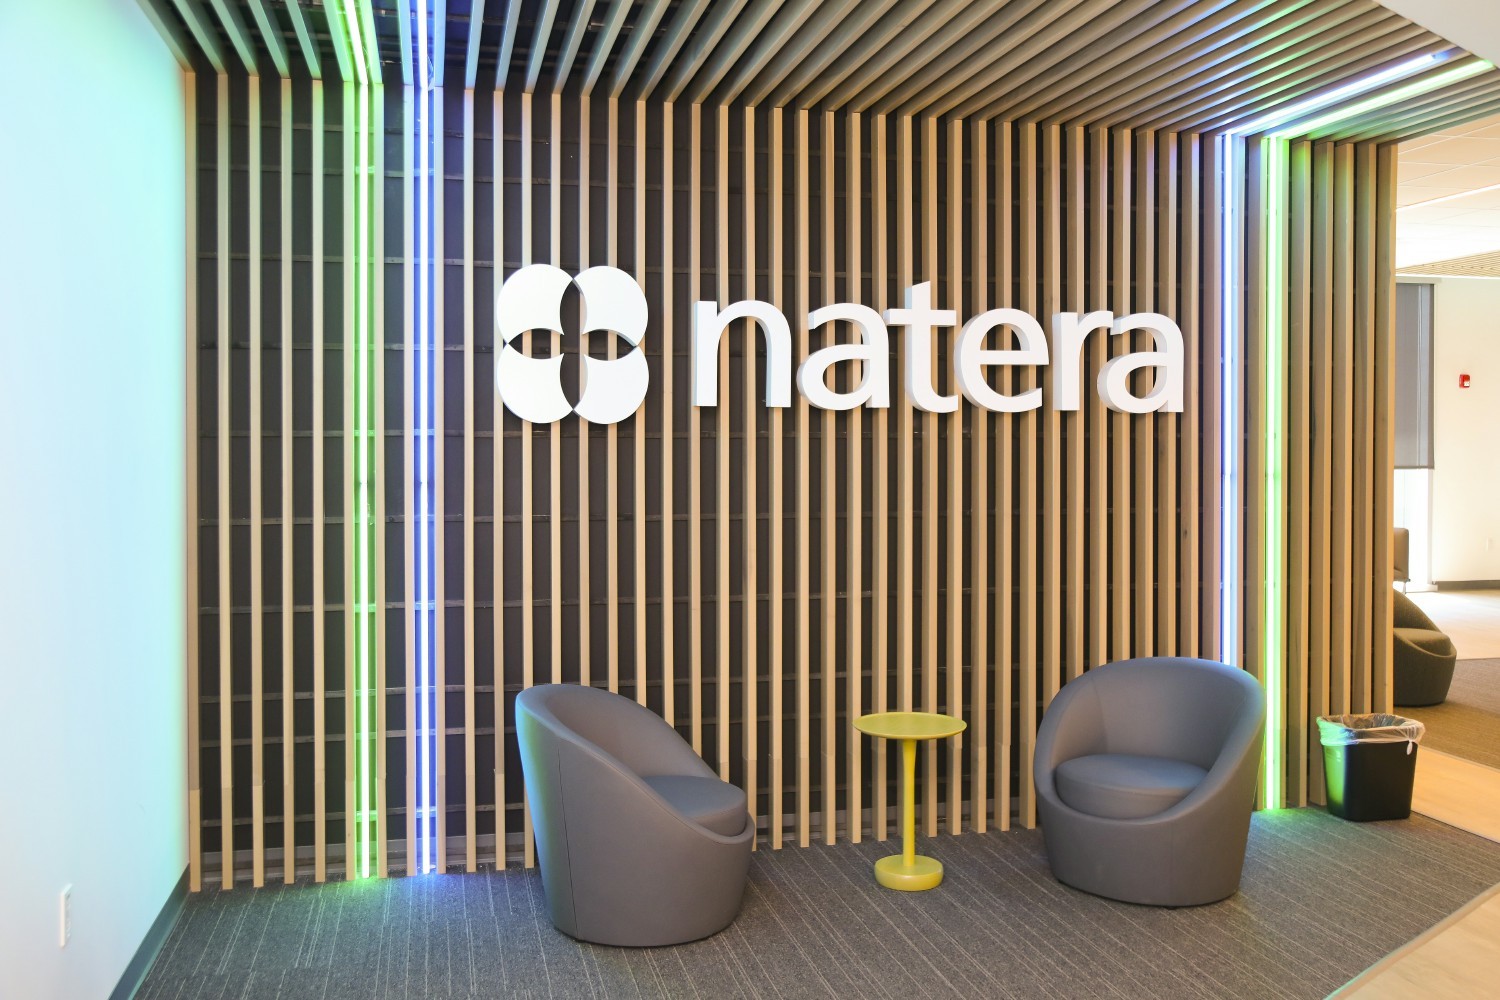 Natera HQ gets updates in Austin, TX. 